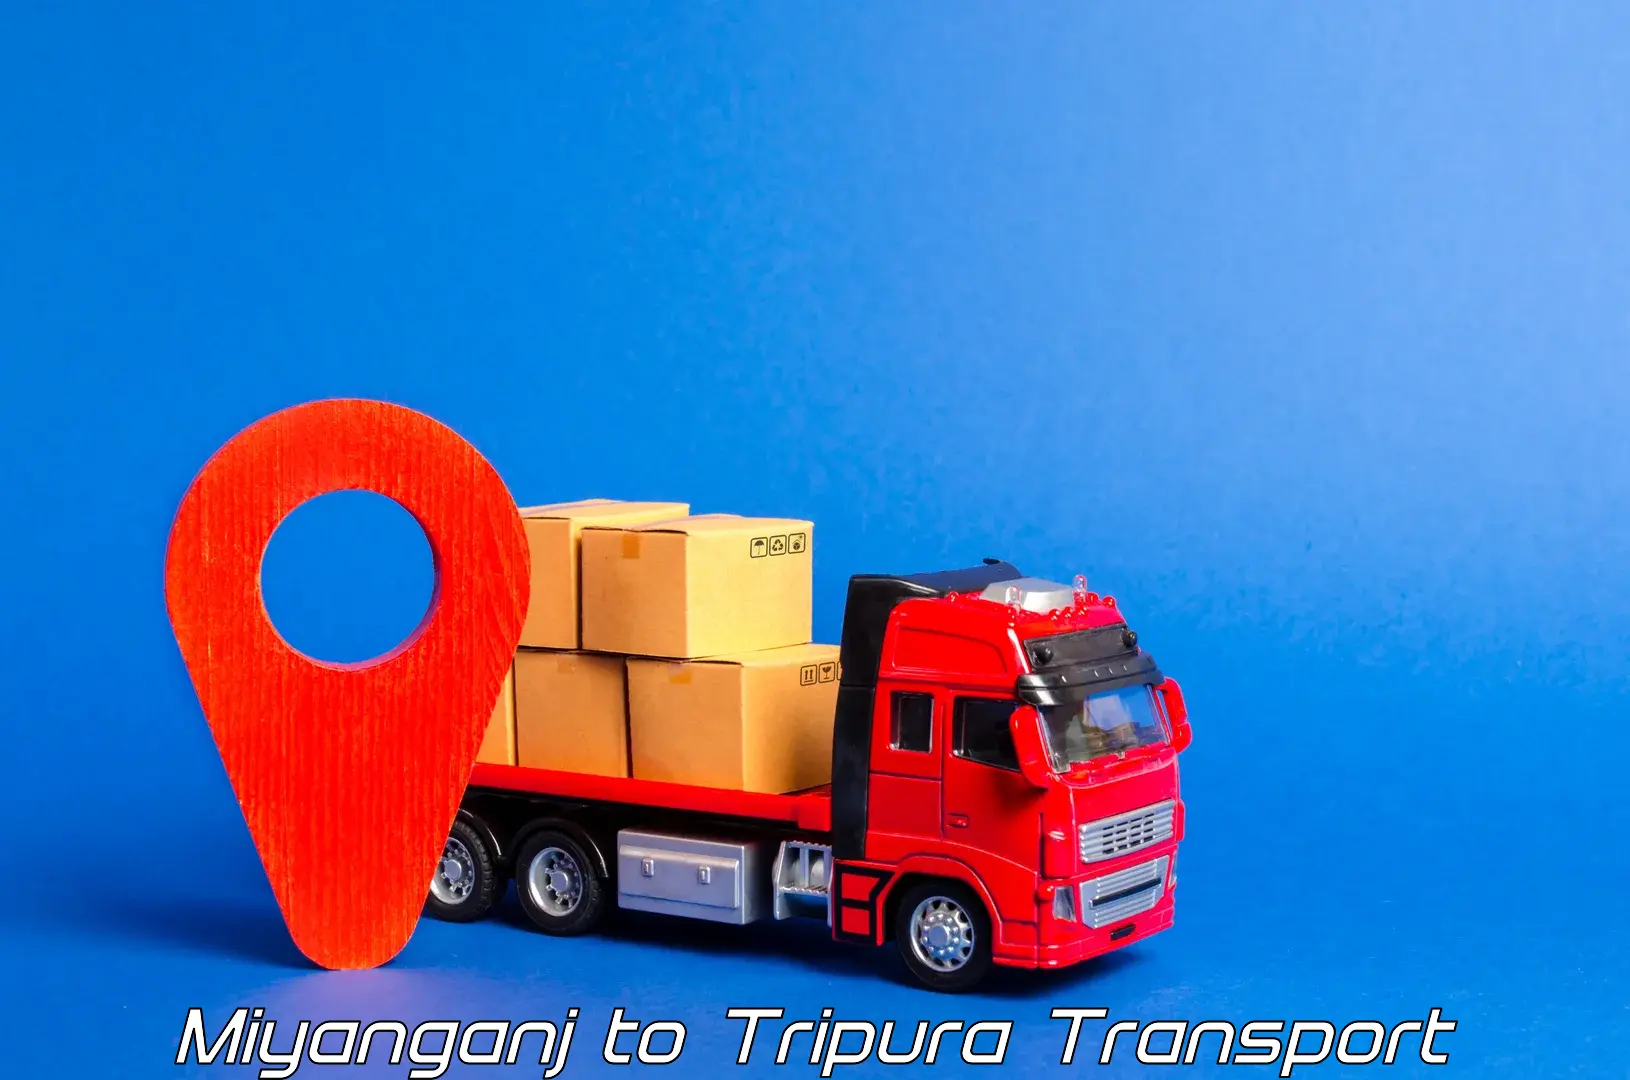 Cargo transportation services Miyanganj to Udaipur Tripura